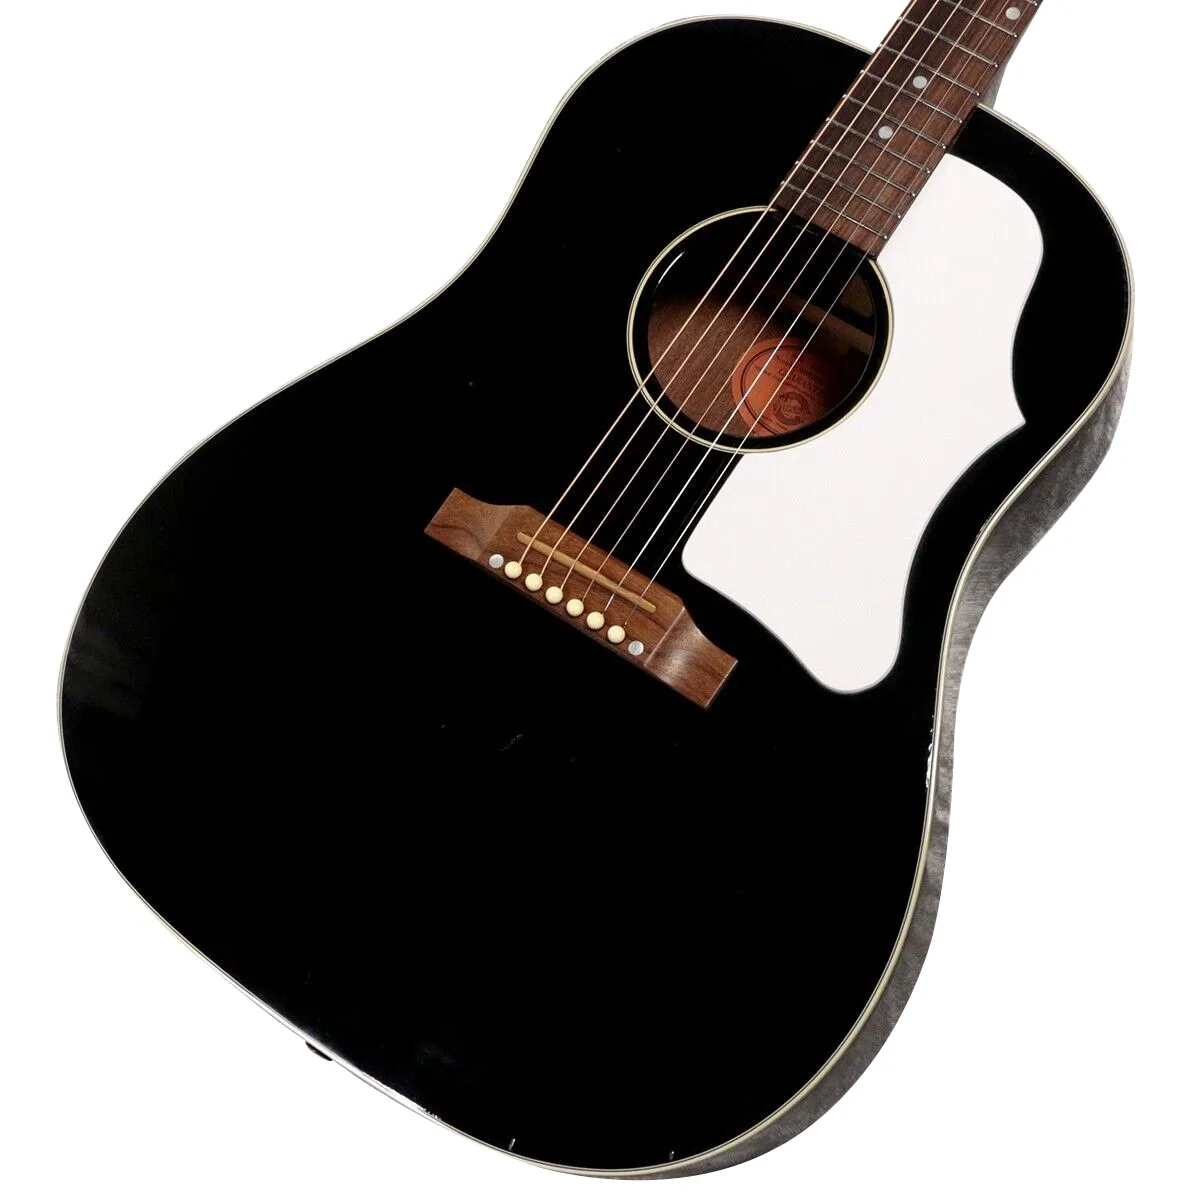 J45 Ebony Acoustic Guitar f/s som samma av bilderna